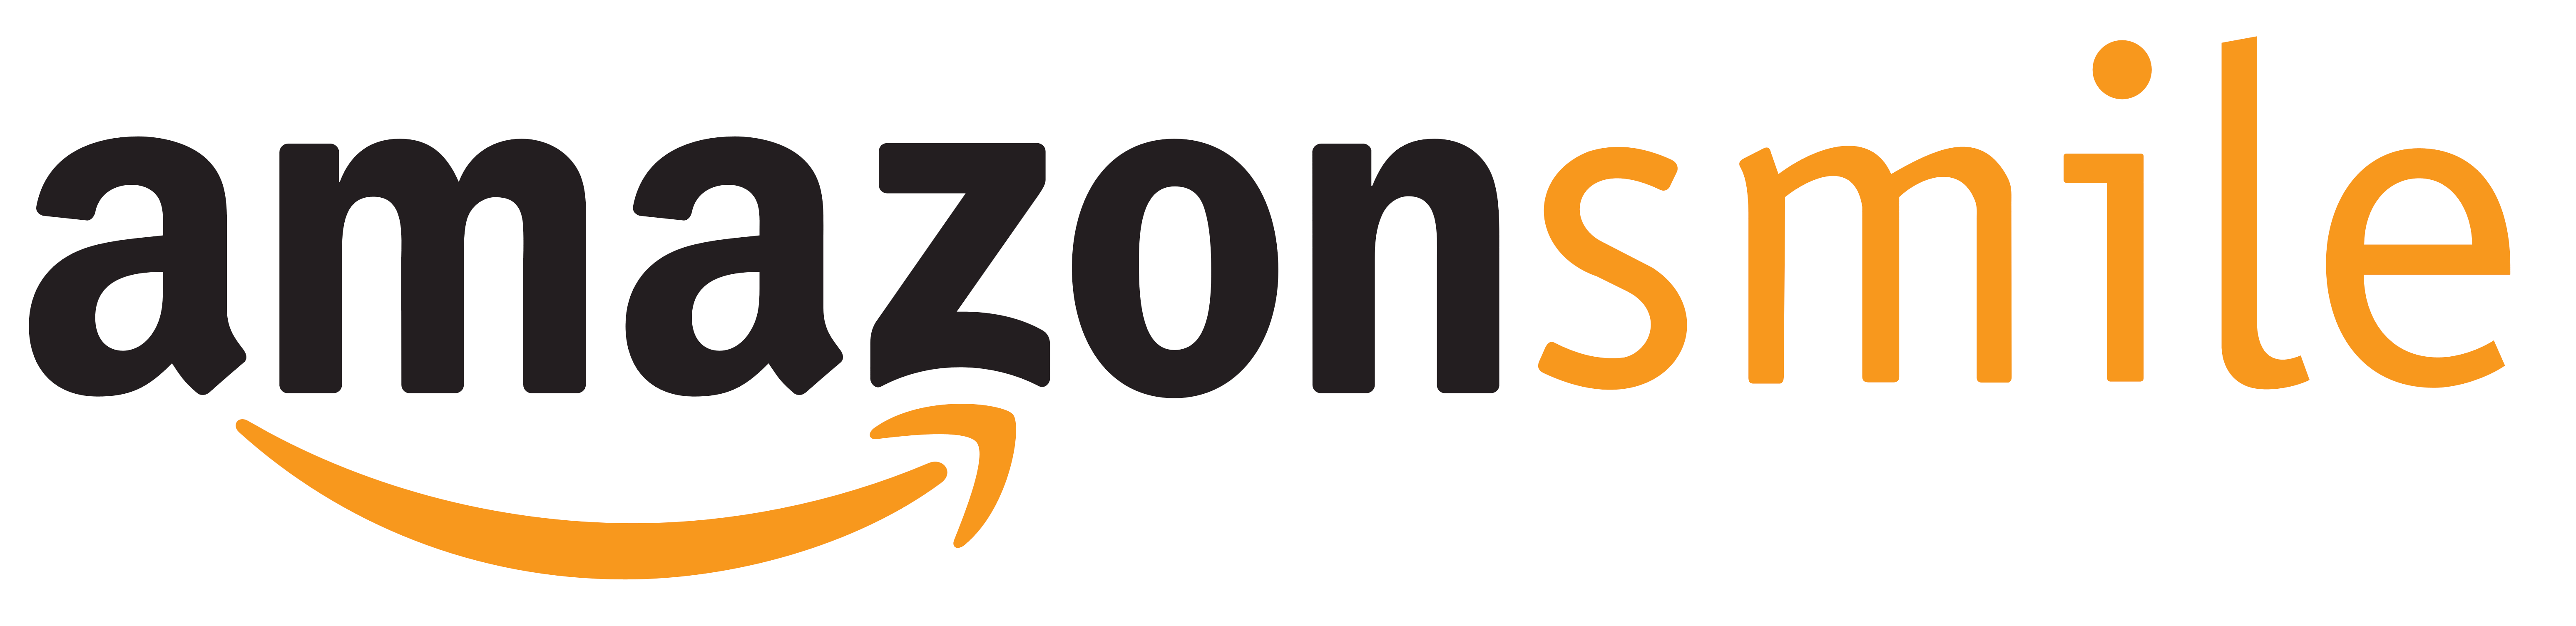 Amazon Smile. Amazon Smile Logo - Amazon Vector, Transparent background PNG HD thumbnail